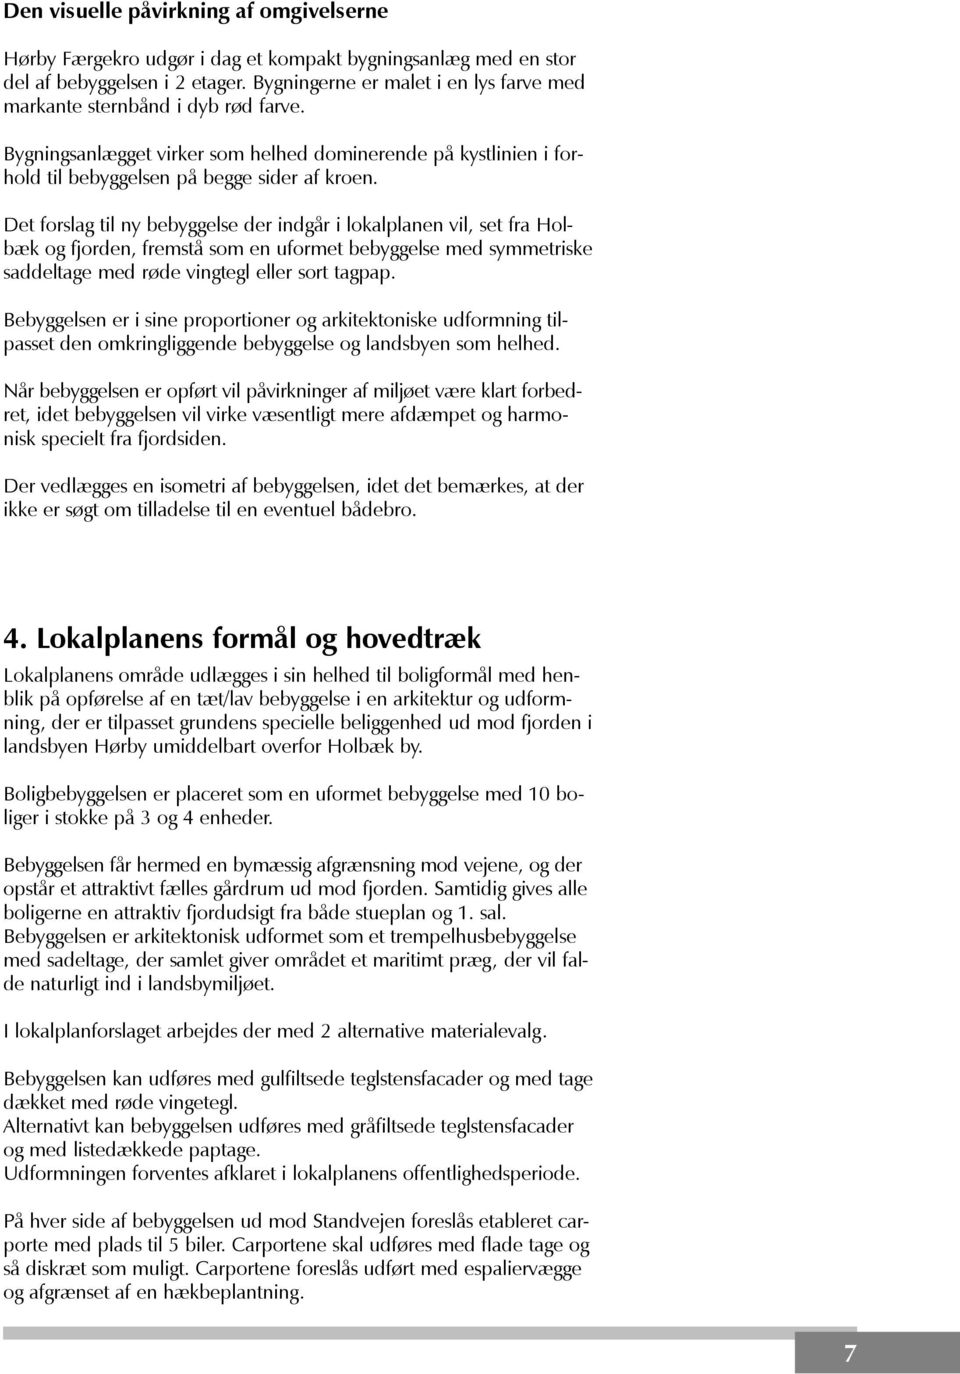 Det forslag til ny bebyggelse der indgår i lokalplanen vil, set fra Holbæk og fjorden, fremstå som en uformet bebyggelse med symmetriske saddeltage med røde vingtegl eller sort tagpap.